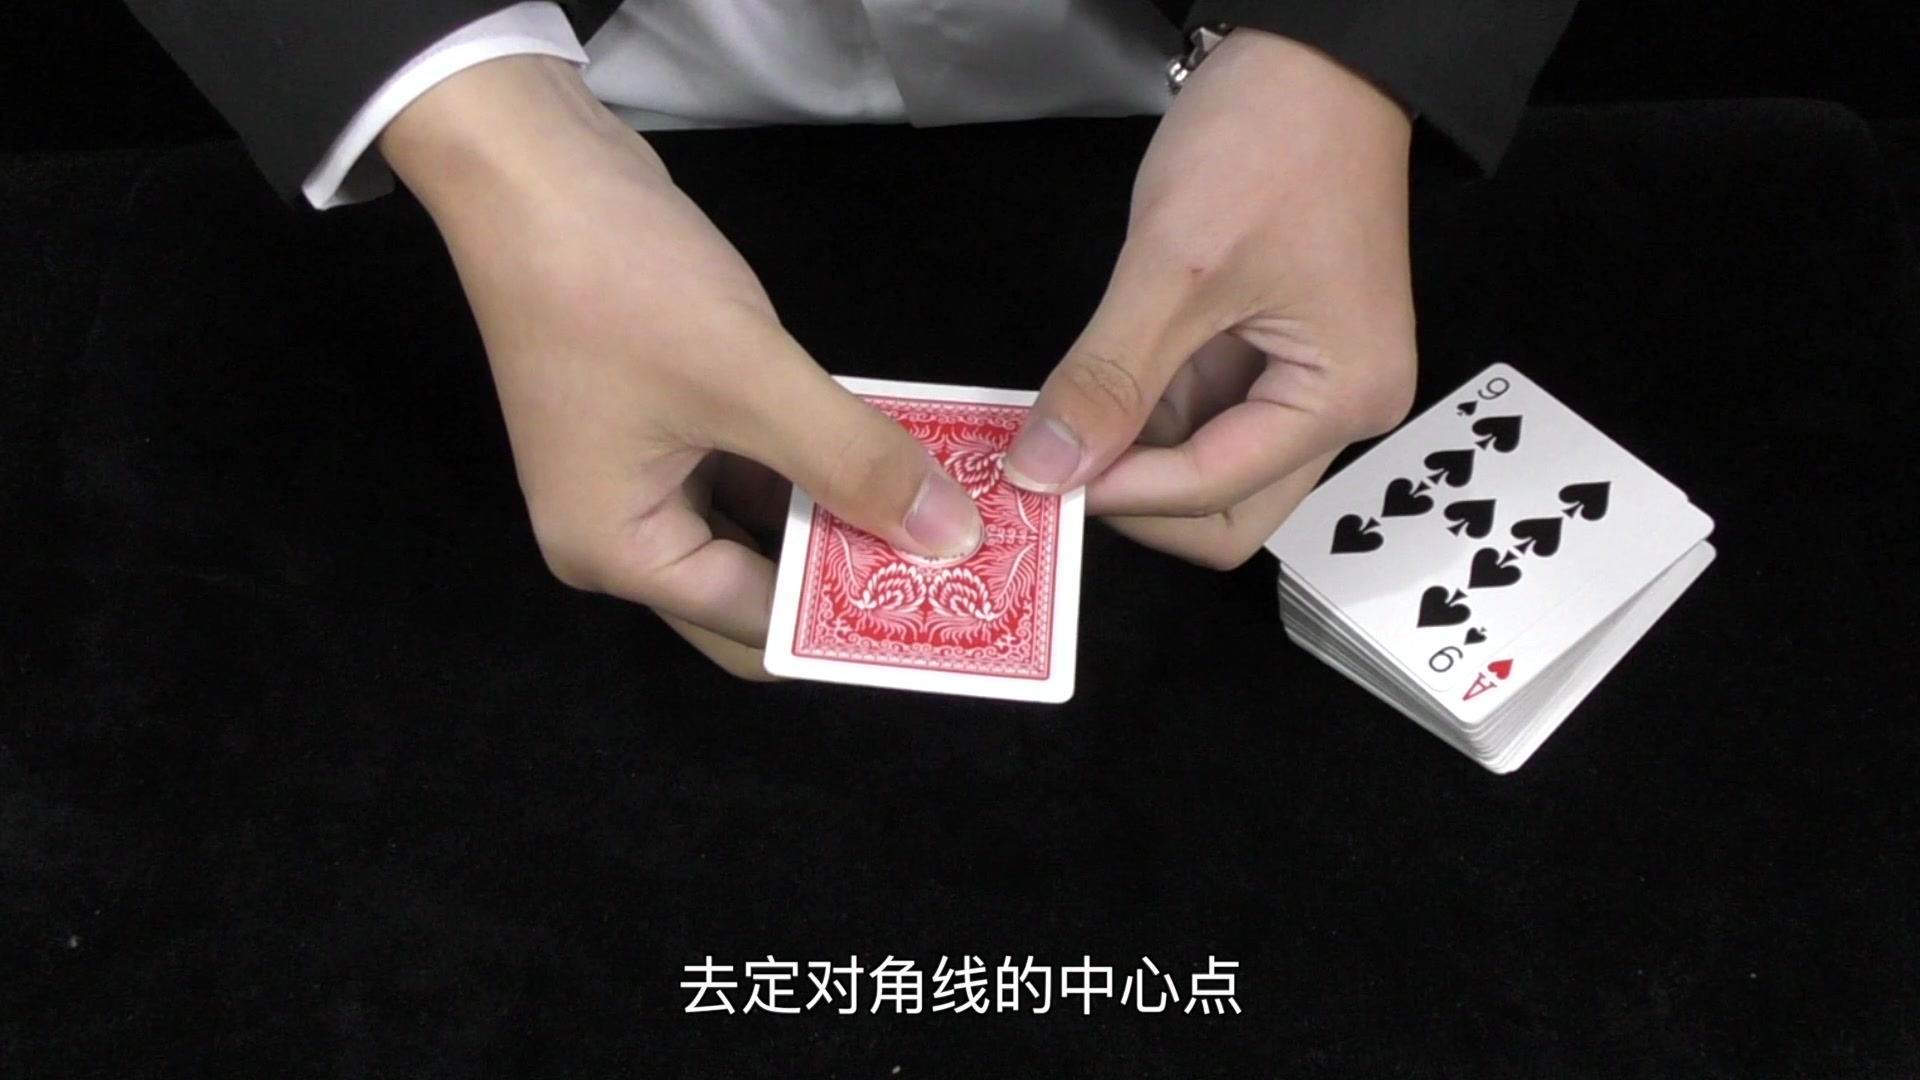 扑克控洗牌纯手法技巧基本功,扑克三公扎金花手法教程